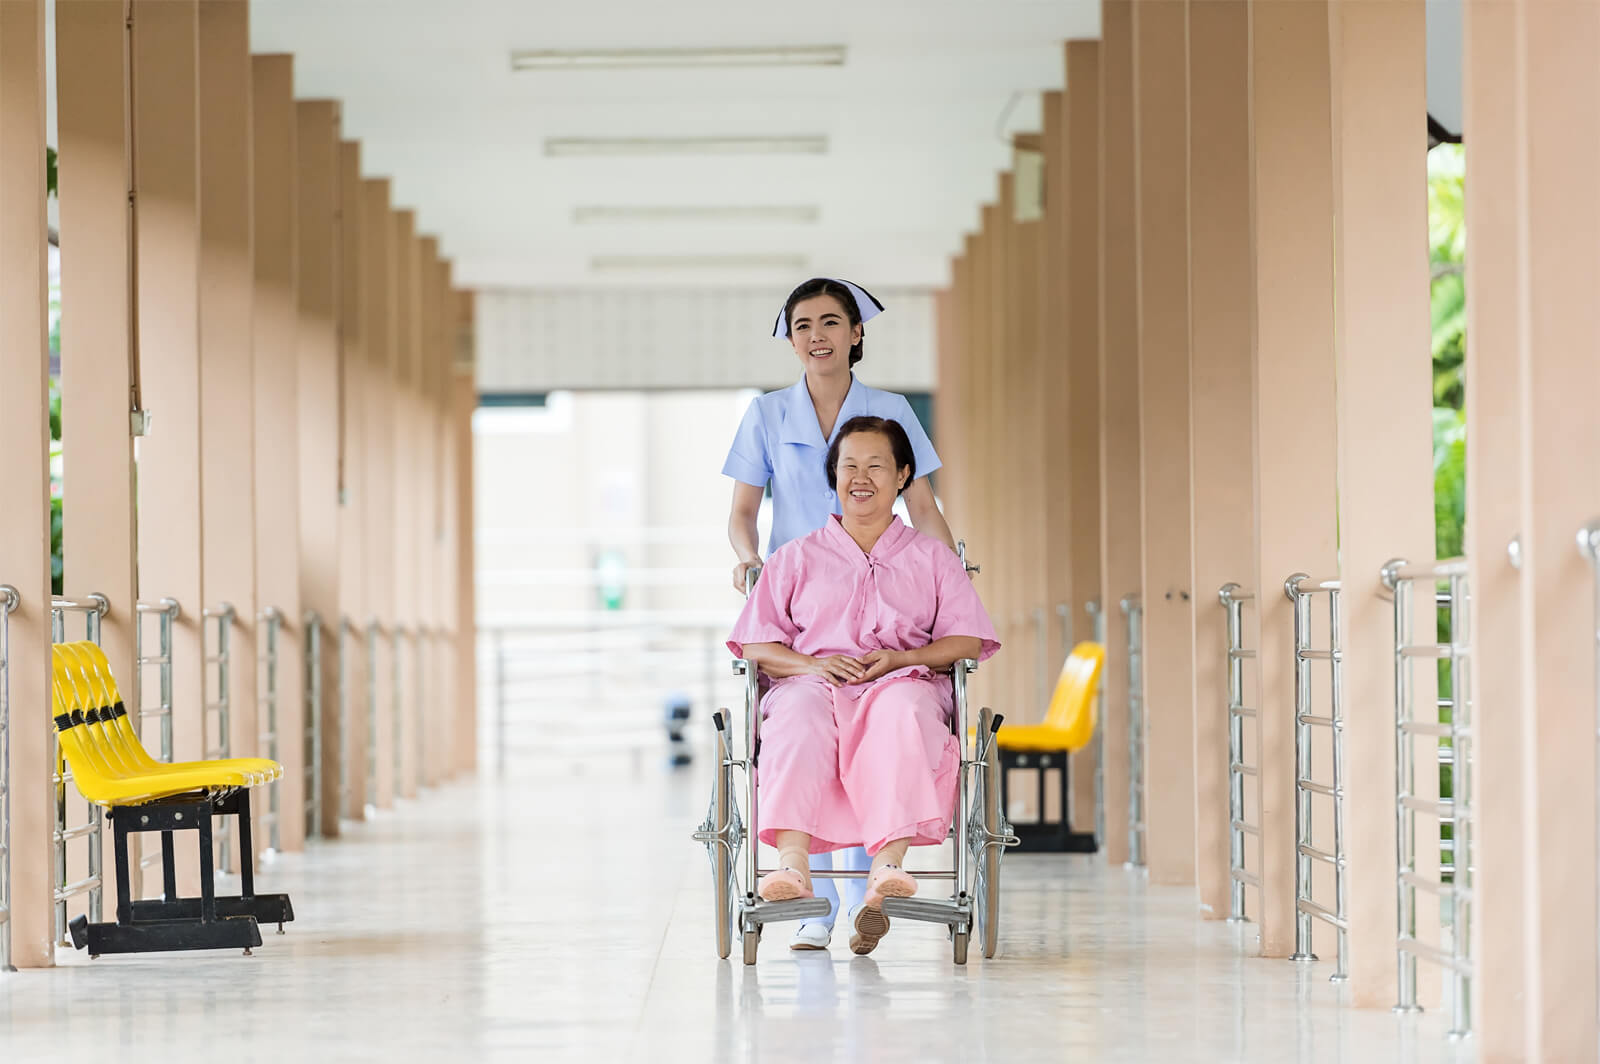 4 Wellness Tips For Seniors In Nursing Homes